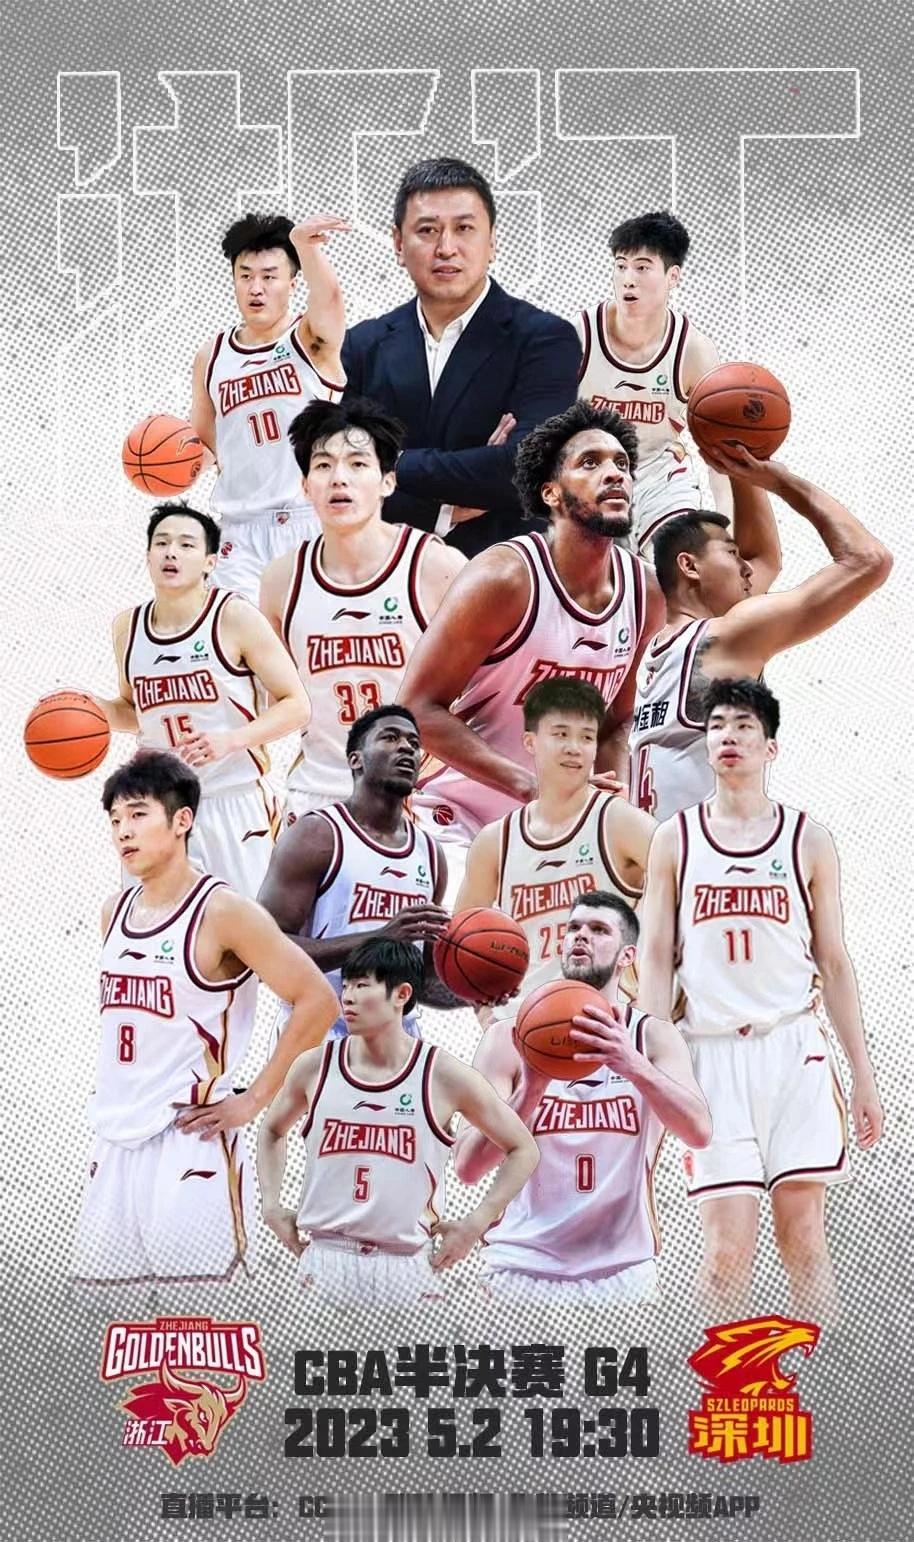 #深圳男篮vs浙江男篮# g4今晚开打，两队均发布了赛前海报，深圳男篮的主题是“(2)